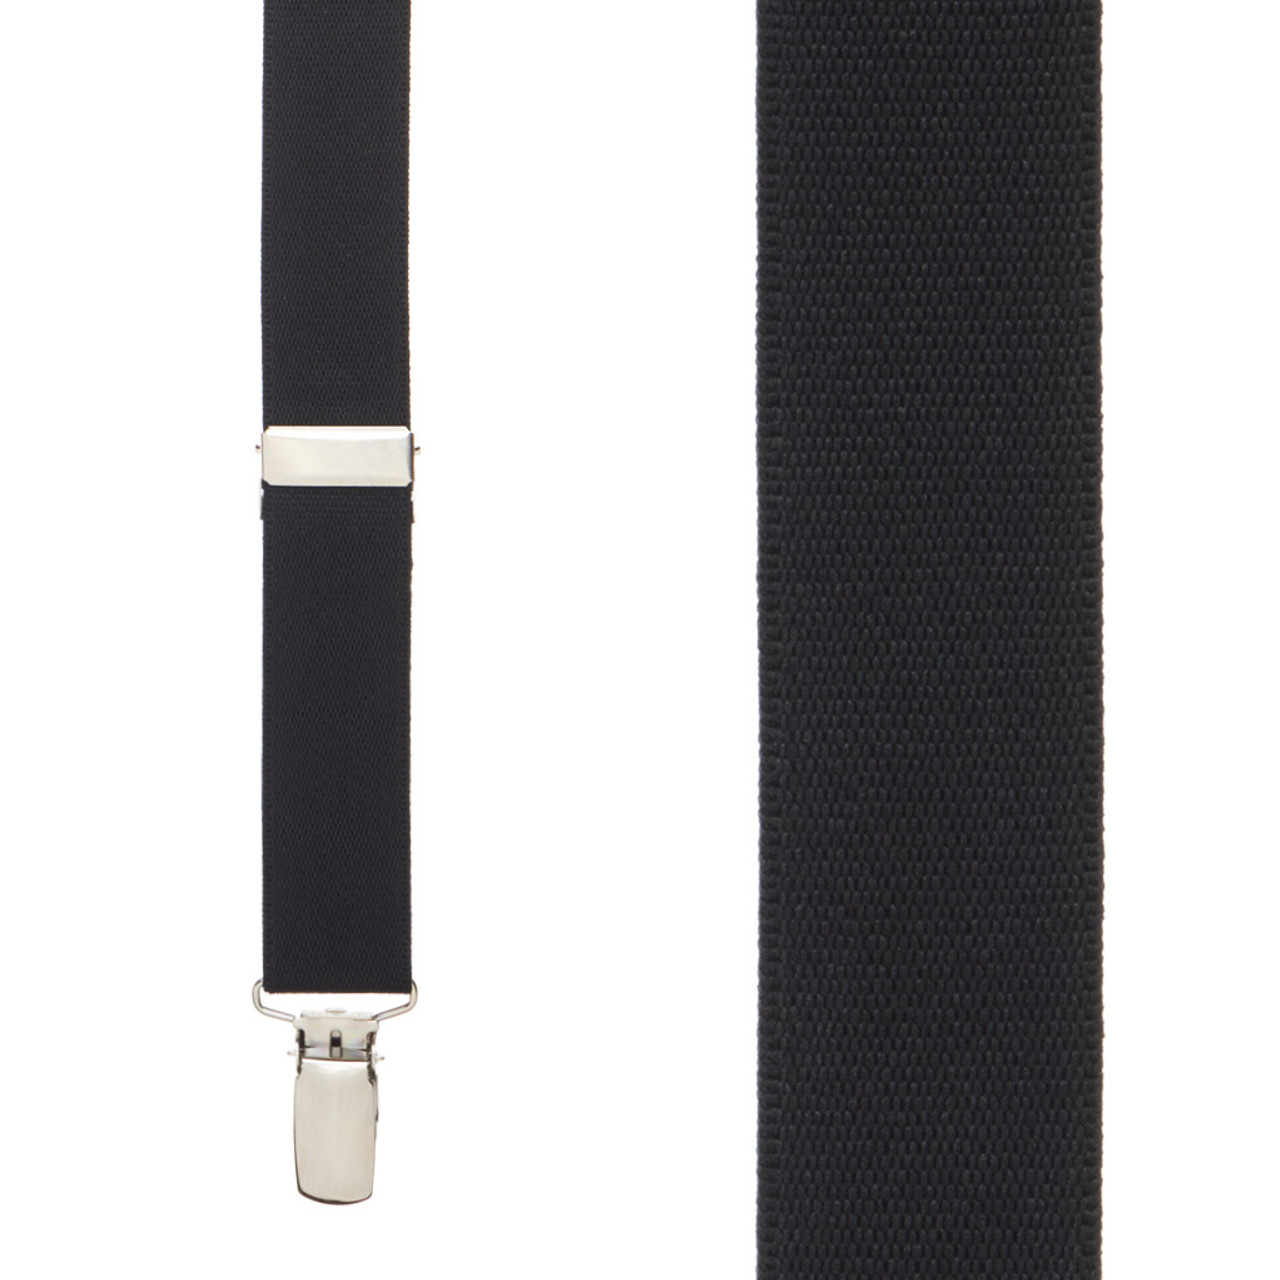 Elastic Band Y-Style Suspenders in Black